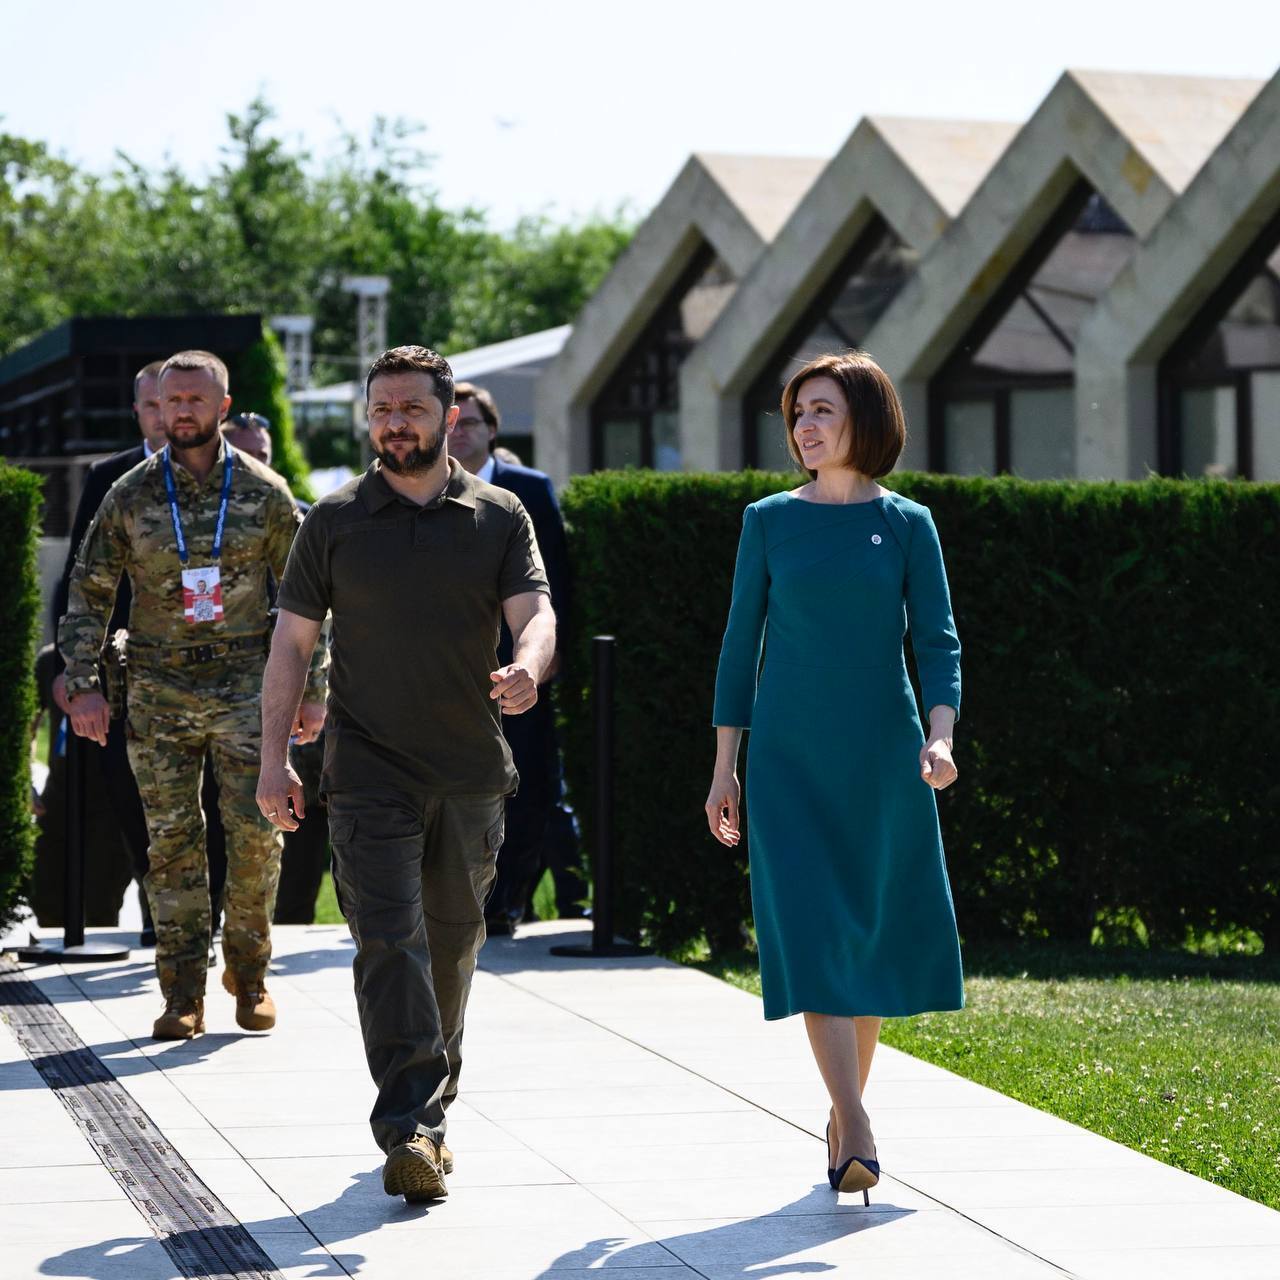 Коалиция истребителей и перспективы вступления в НАТО: Зеленский в Молдове провел переговоры с Санду и лидерами стран-партнеров Украины